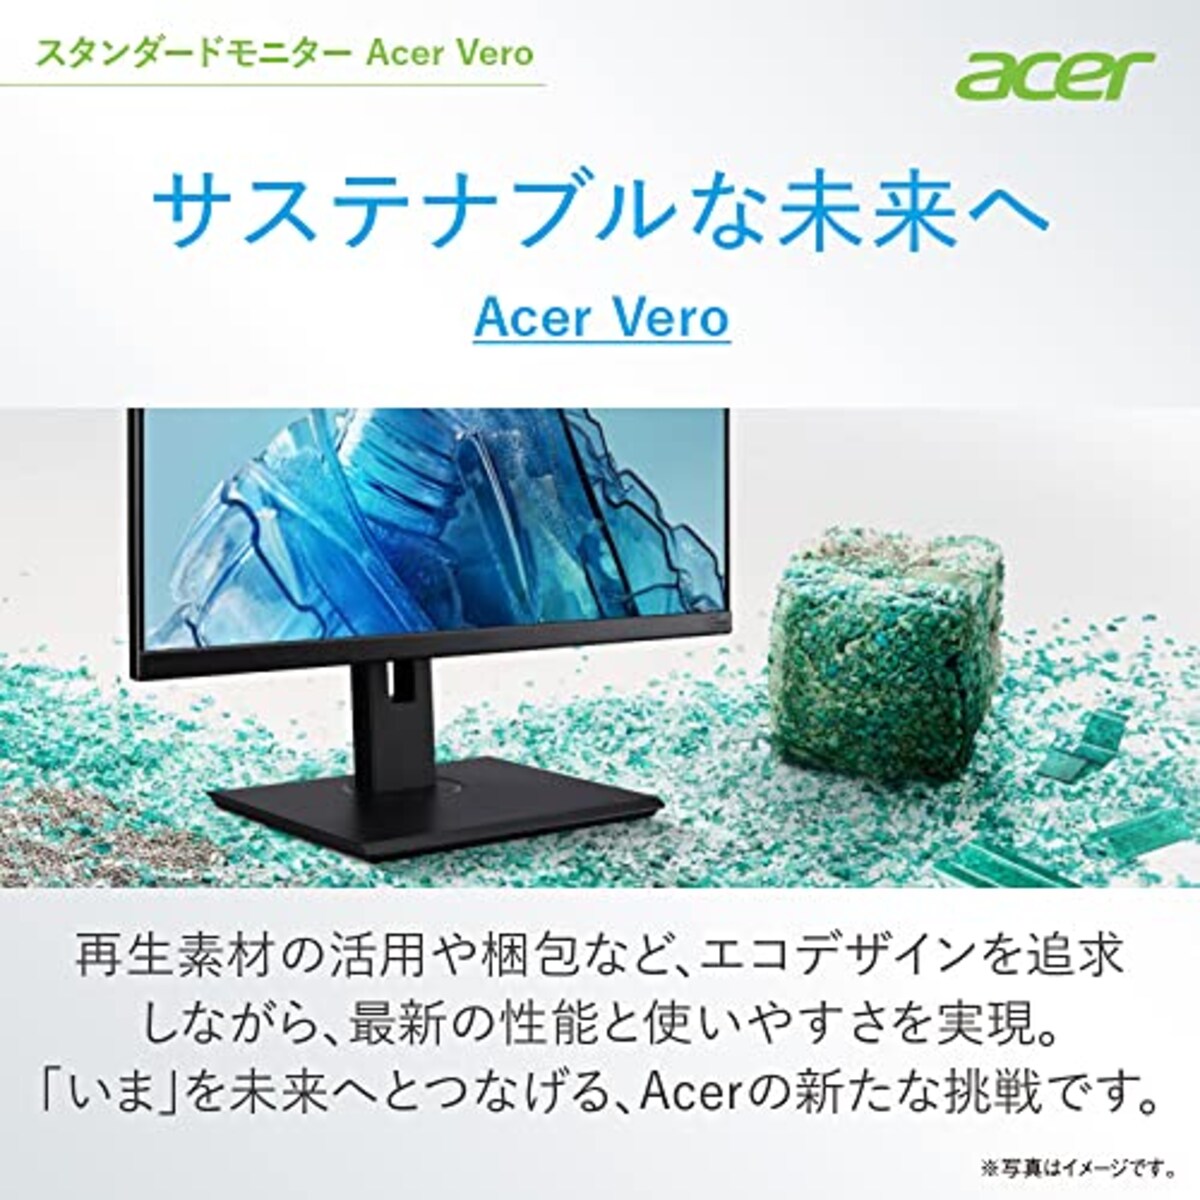  Acer モニター Vero BR247Ybmiprx 23.8インチ IPS 非光沢 フルHD 75Hz 4ms(GTG)Adaptive-Sync EPEAT Silver取得 VESAマウント対応 スピーカー内蔵 高さ調整 ピボット スイベル チルト スピーカー搭載 フリッカーレス ブルーライト軽減 フレームレスデザイン画像2 